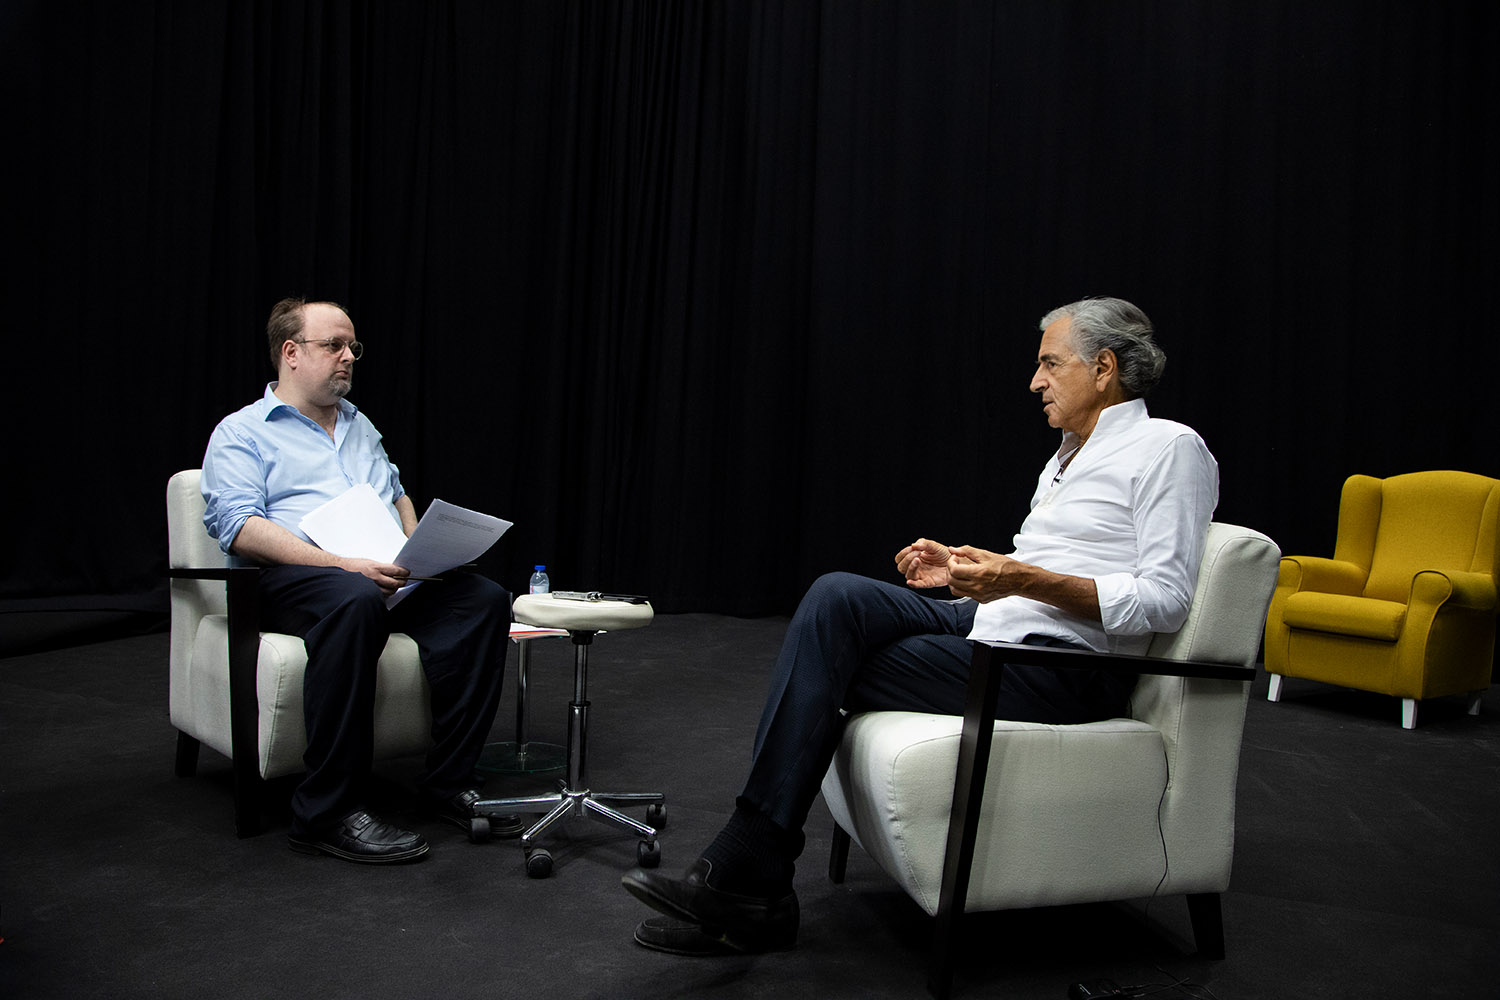 Pedro Mexia et Bernard-Henri Lévy réalisent un entretien, ils sont l'un et l'autre assis dans un fauteuil et se font face.